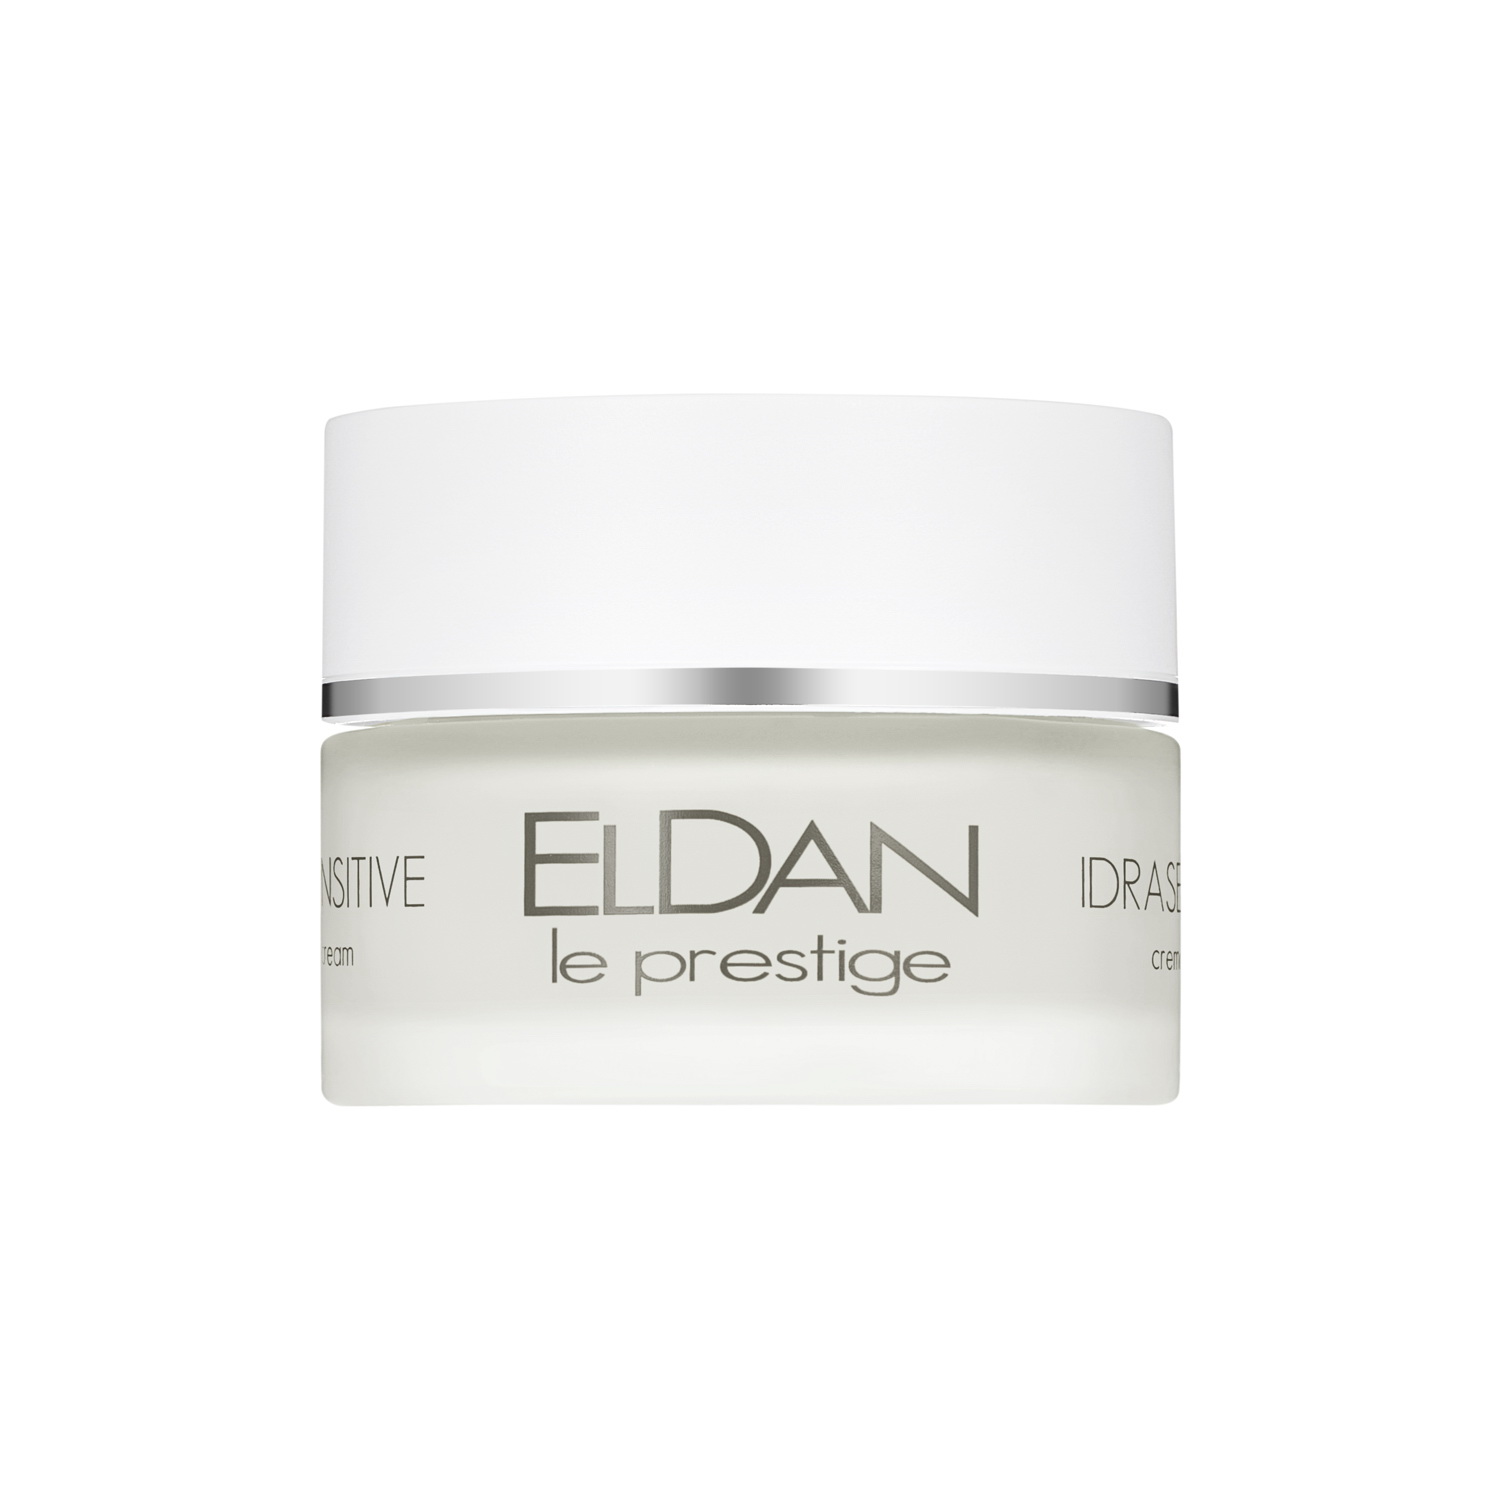 Крем для лица ELDAN Cosmetics Idrasensitive 24H Cream для чувствительной кожи, 50 мл eldan cosmetics средство anti bac touch 10 0